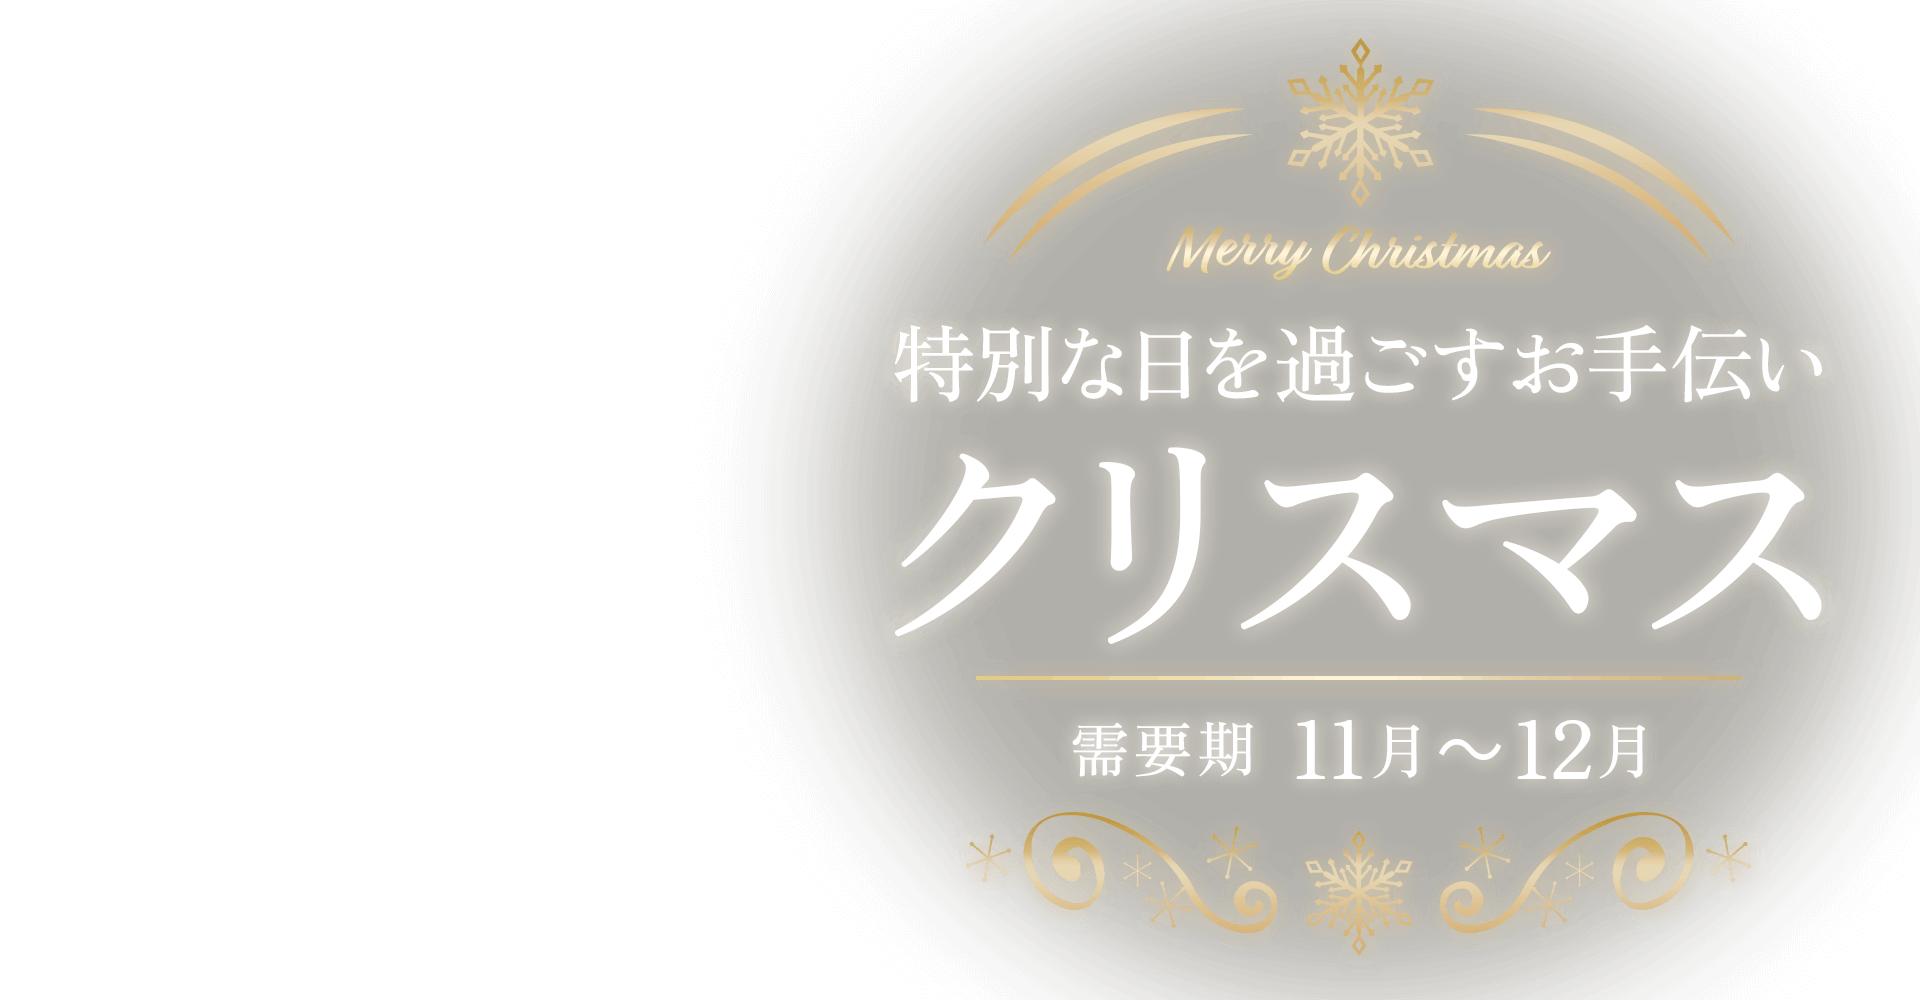 【A8.net】特別な日を過ごすお手伝い【クリスマス特集】